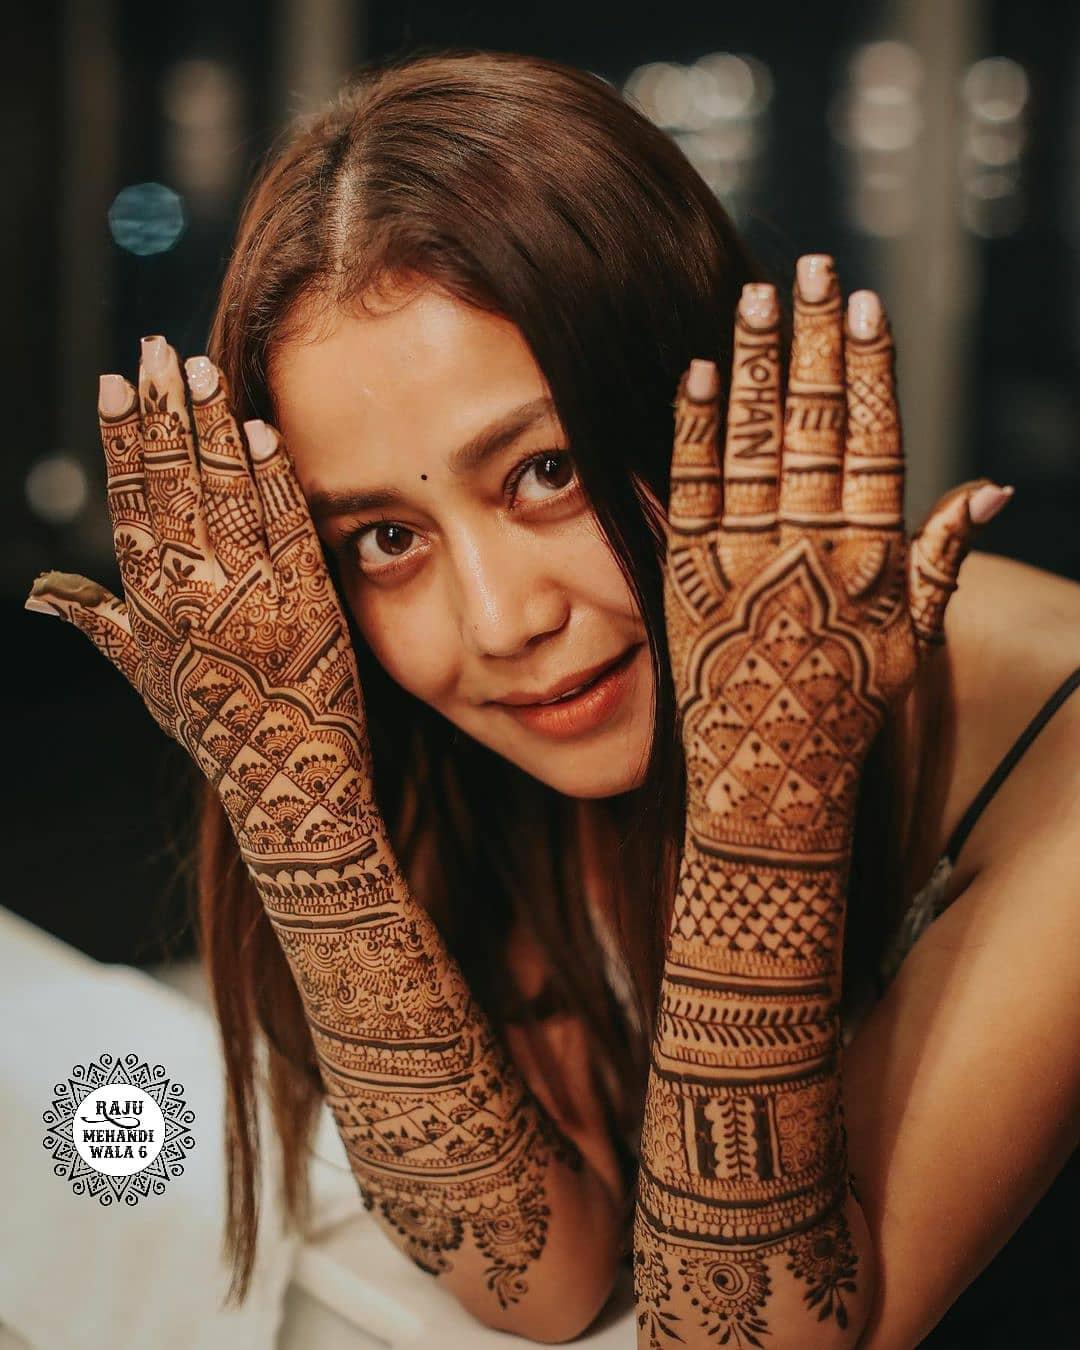 Top 10 Full Hand Henna Designs - 10 Best Mehndi Designs Full Hands for  Indian Weddings - 10 Stunning Full Hand Bridal Henna Designs - Indian  Weddings Full Hand Mehendi Designs (4) - HENNA TATTOO MEHNDI ART BY AMRITA